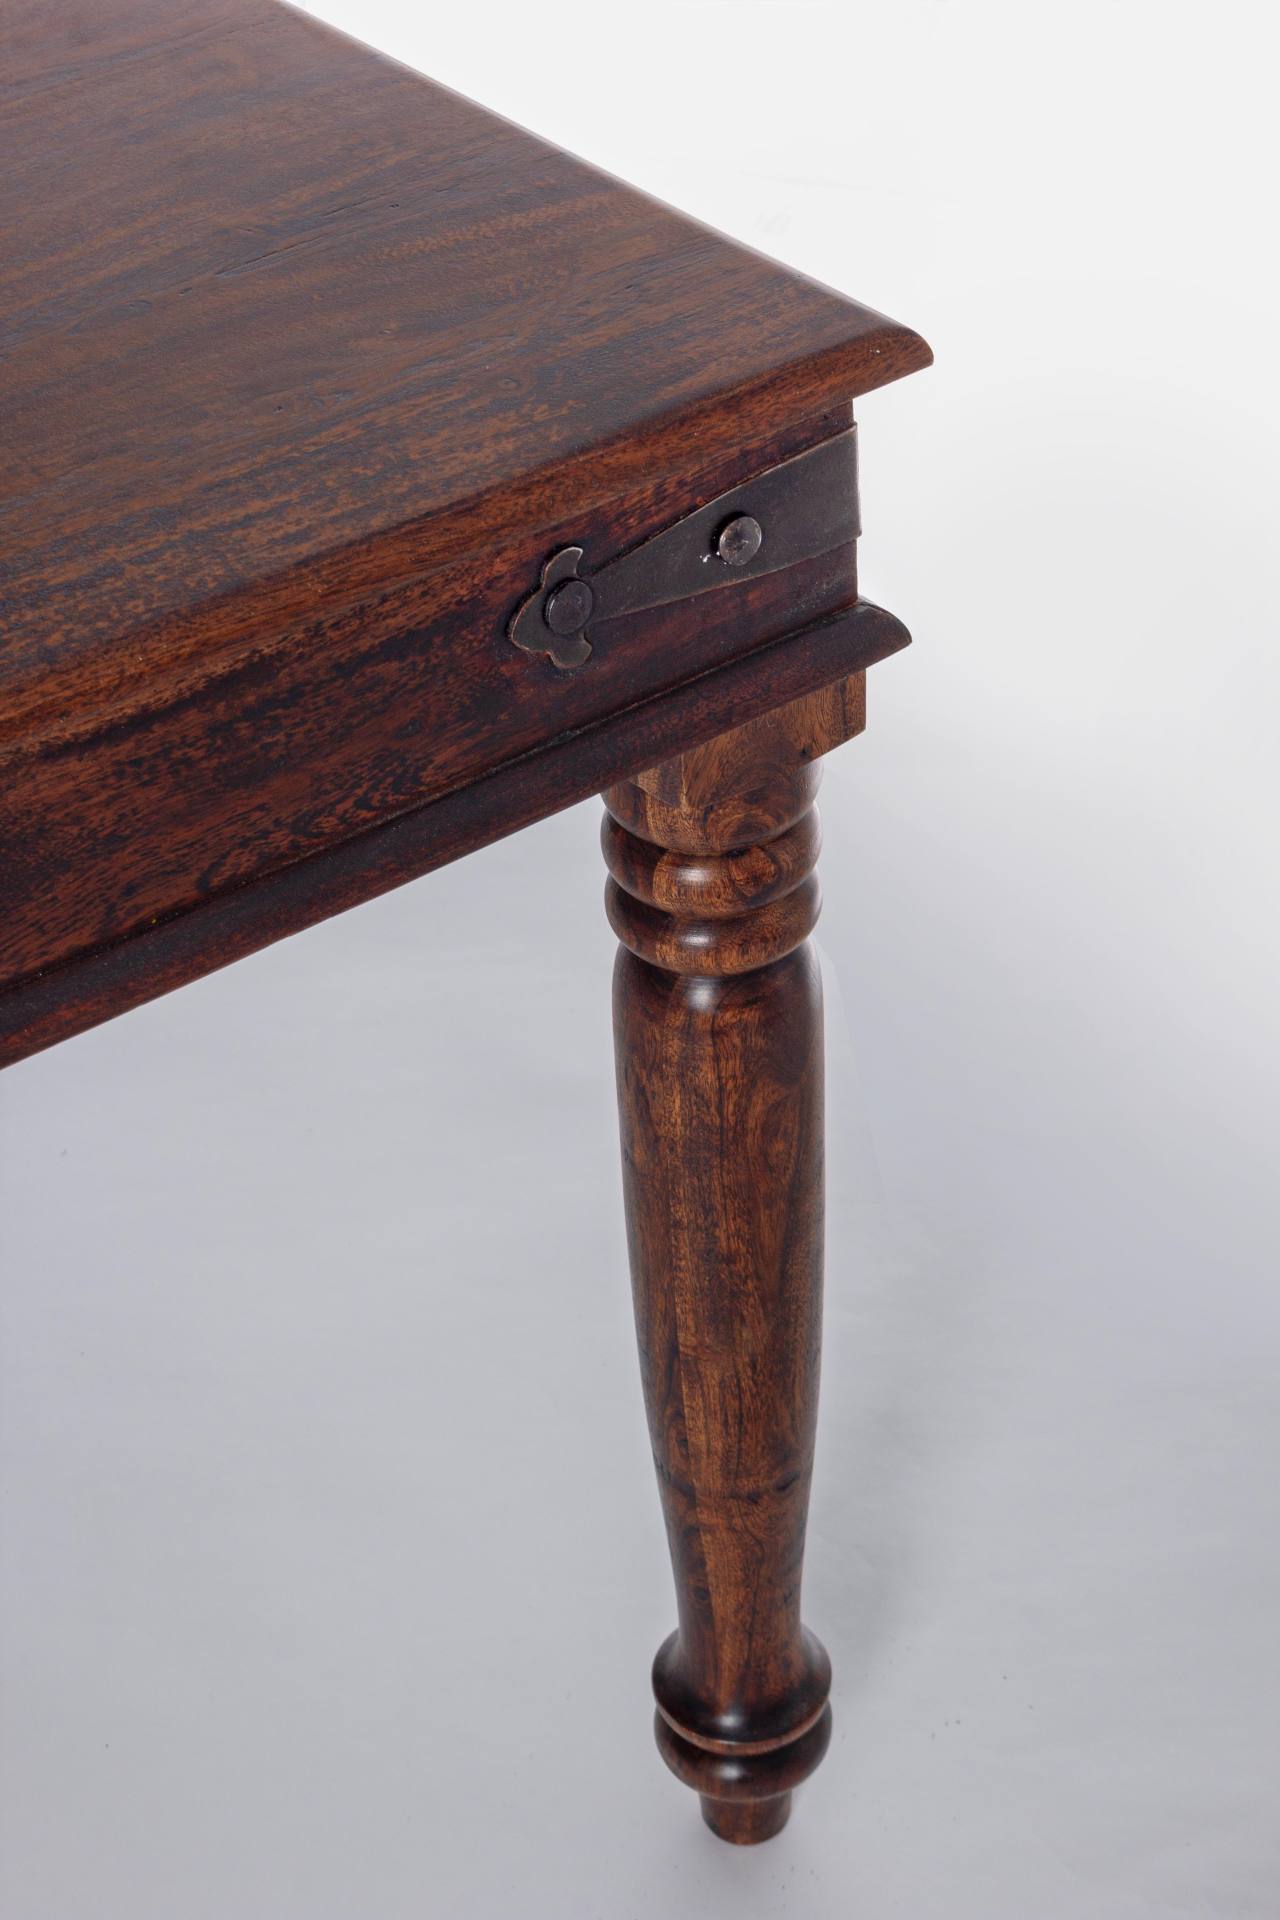 Der Esstisch Jaipur überzeugt mit seinem klassischem Design. Gefertigt wurde er aus Akazienholz, welches einen natürlichen Farbton besitzt. Das Gestell des Tisches ist auch aus Akazienholz. Der Tisch besitzt eine Breite von 200 cm.